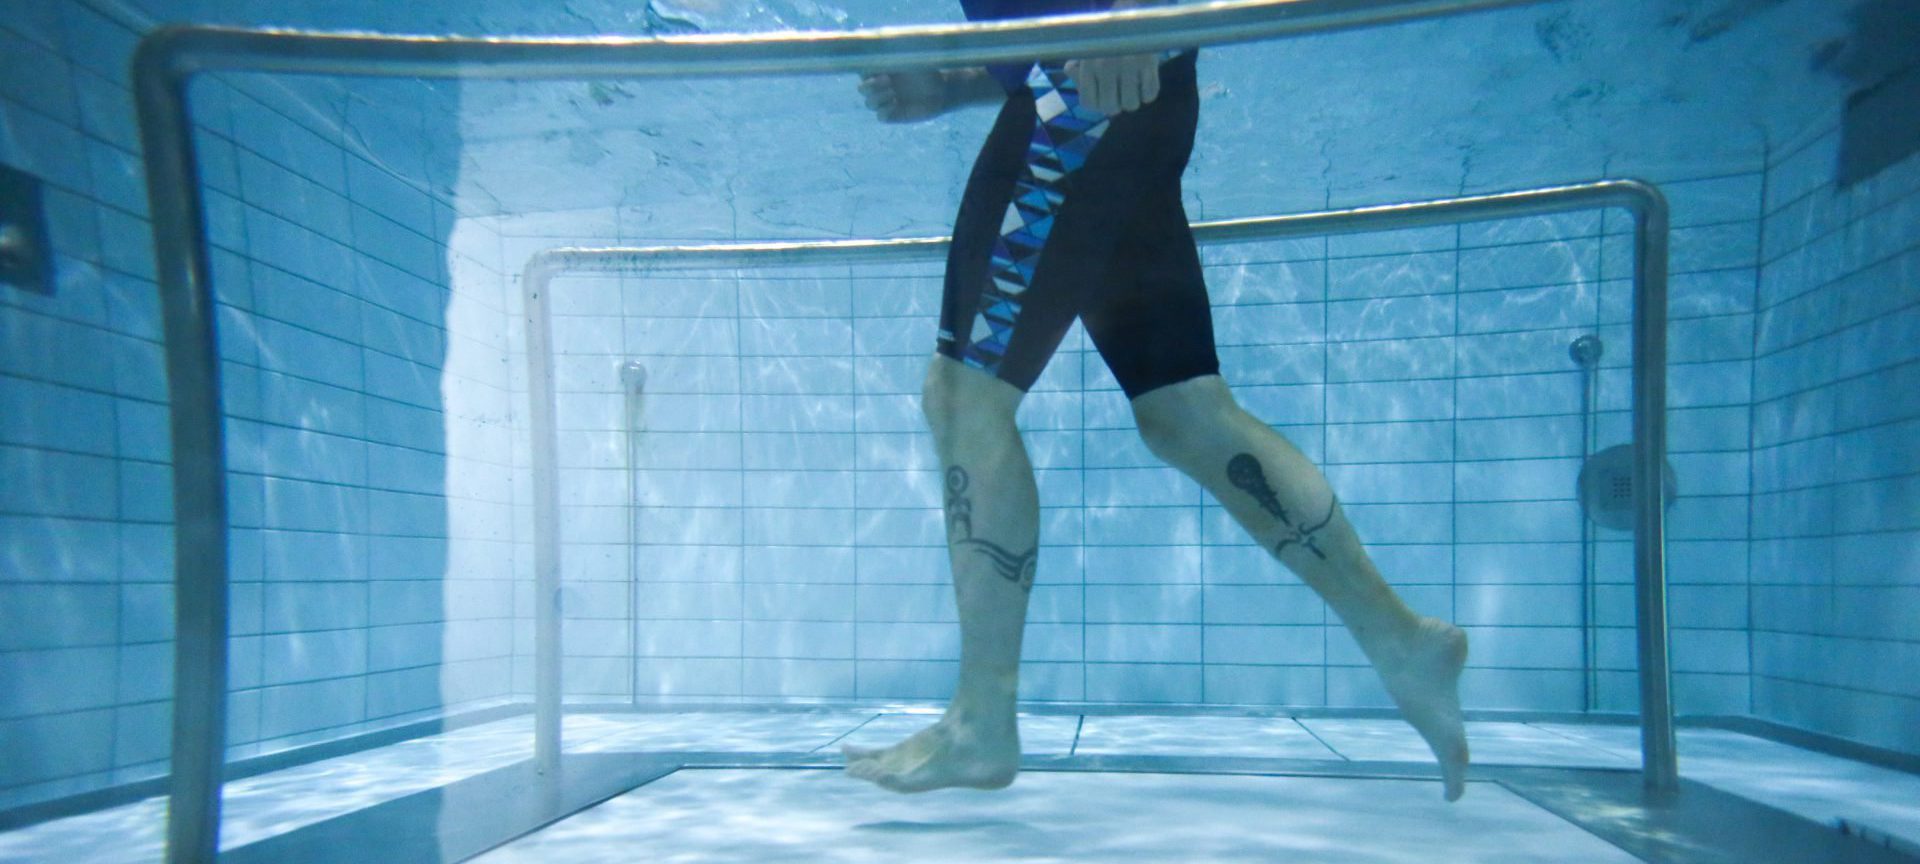 Underwater treadmill running